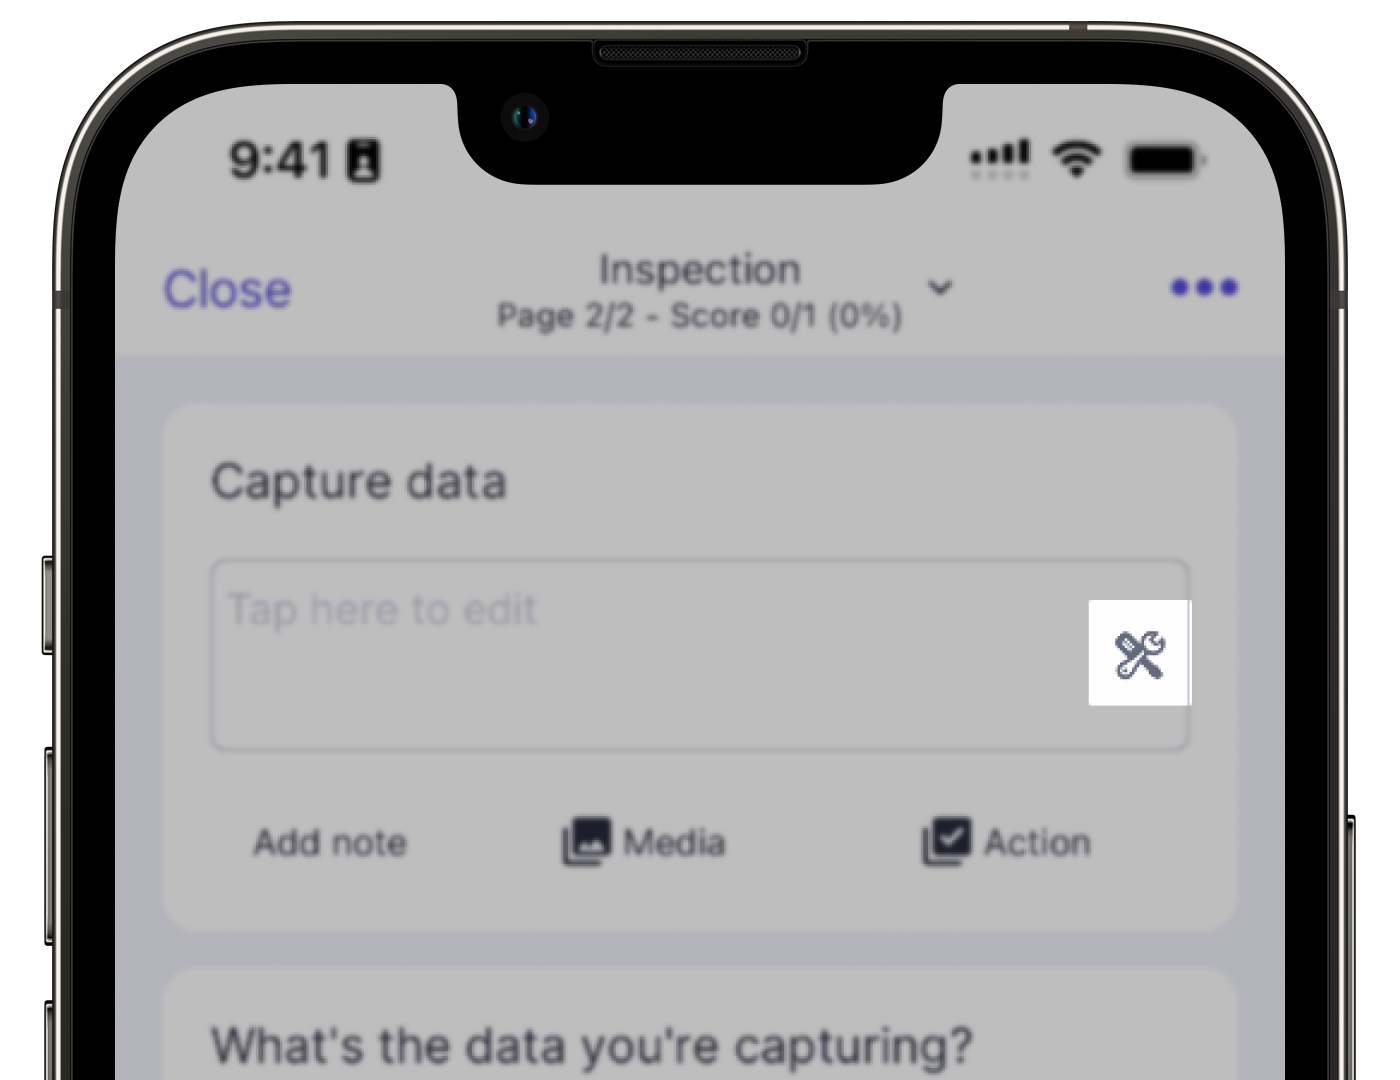 Affichez les options de capture de données disponibles dans les inspections sur l'application portable.